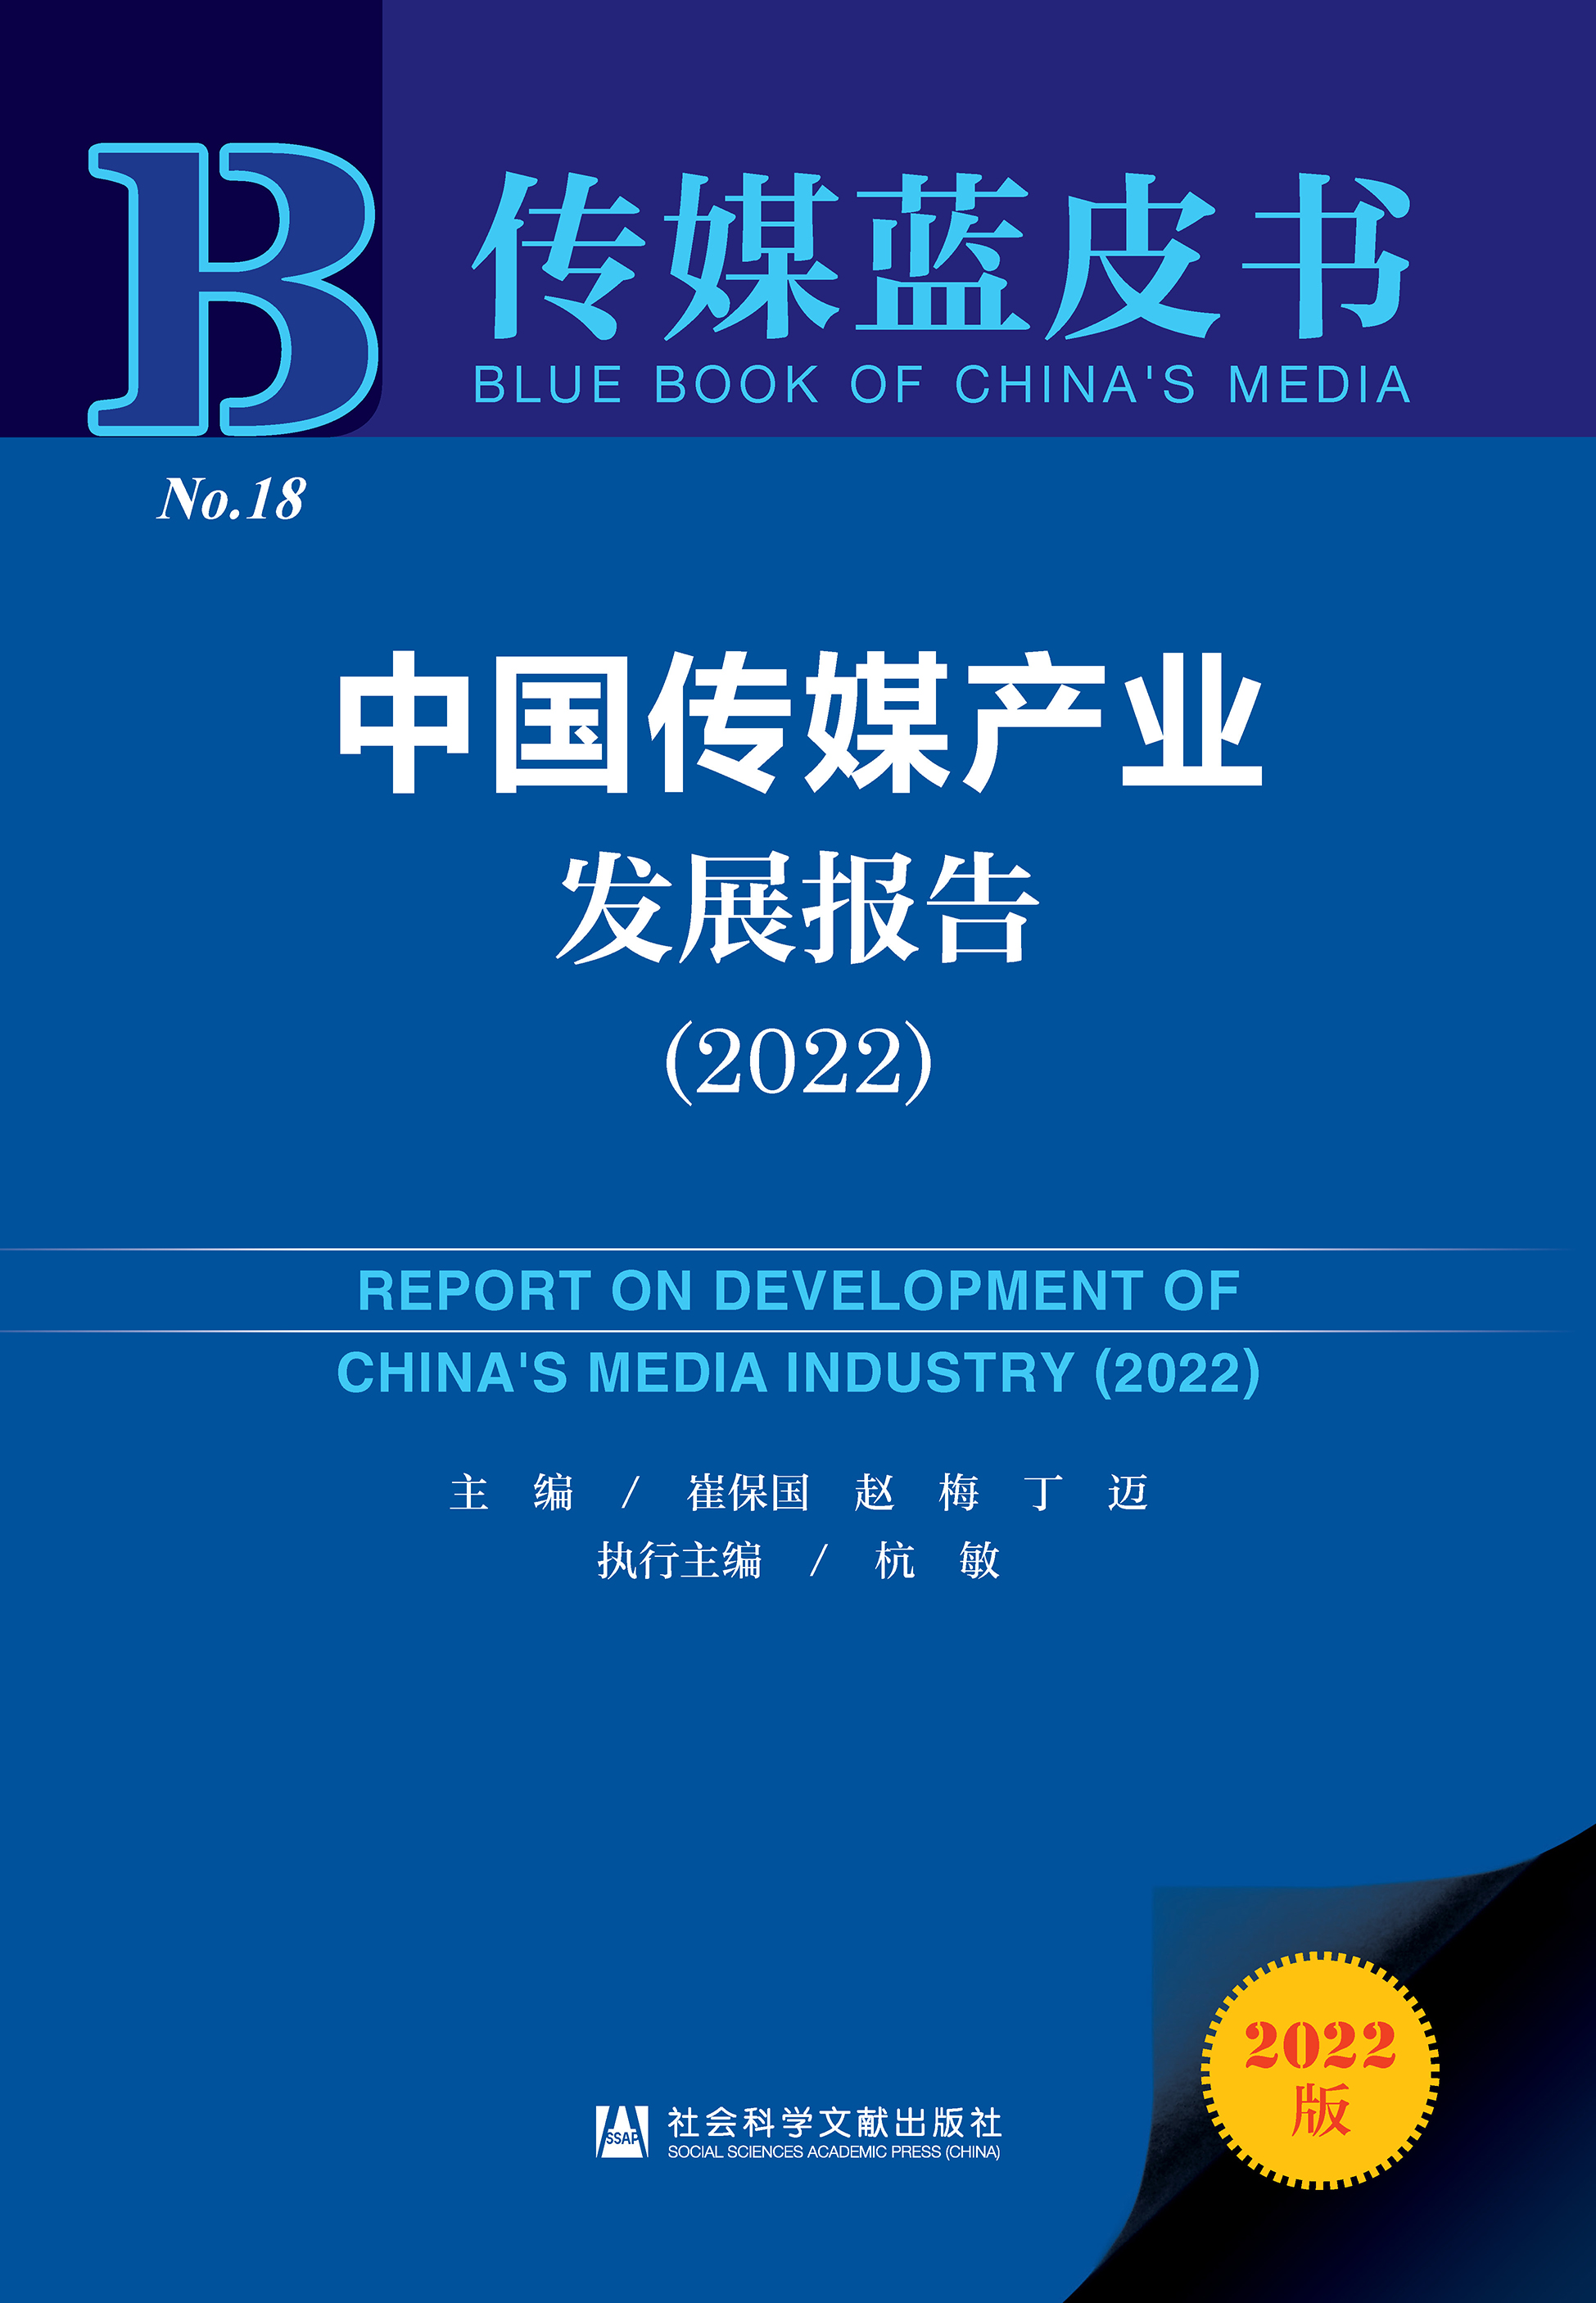 中国婚姻家庭报告2022版(附下载)_未婚_丁男_大城市